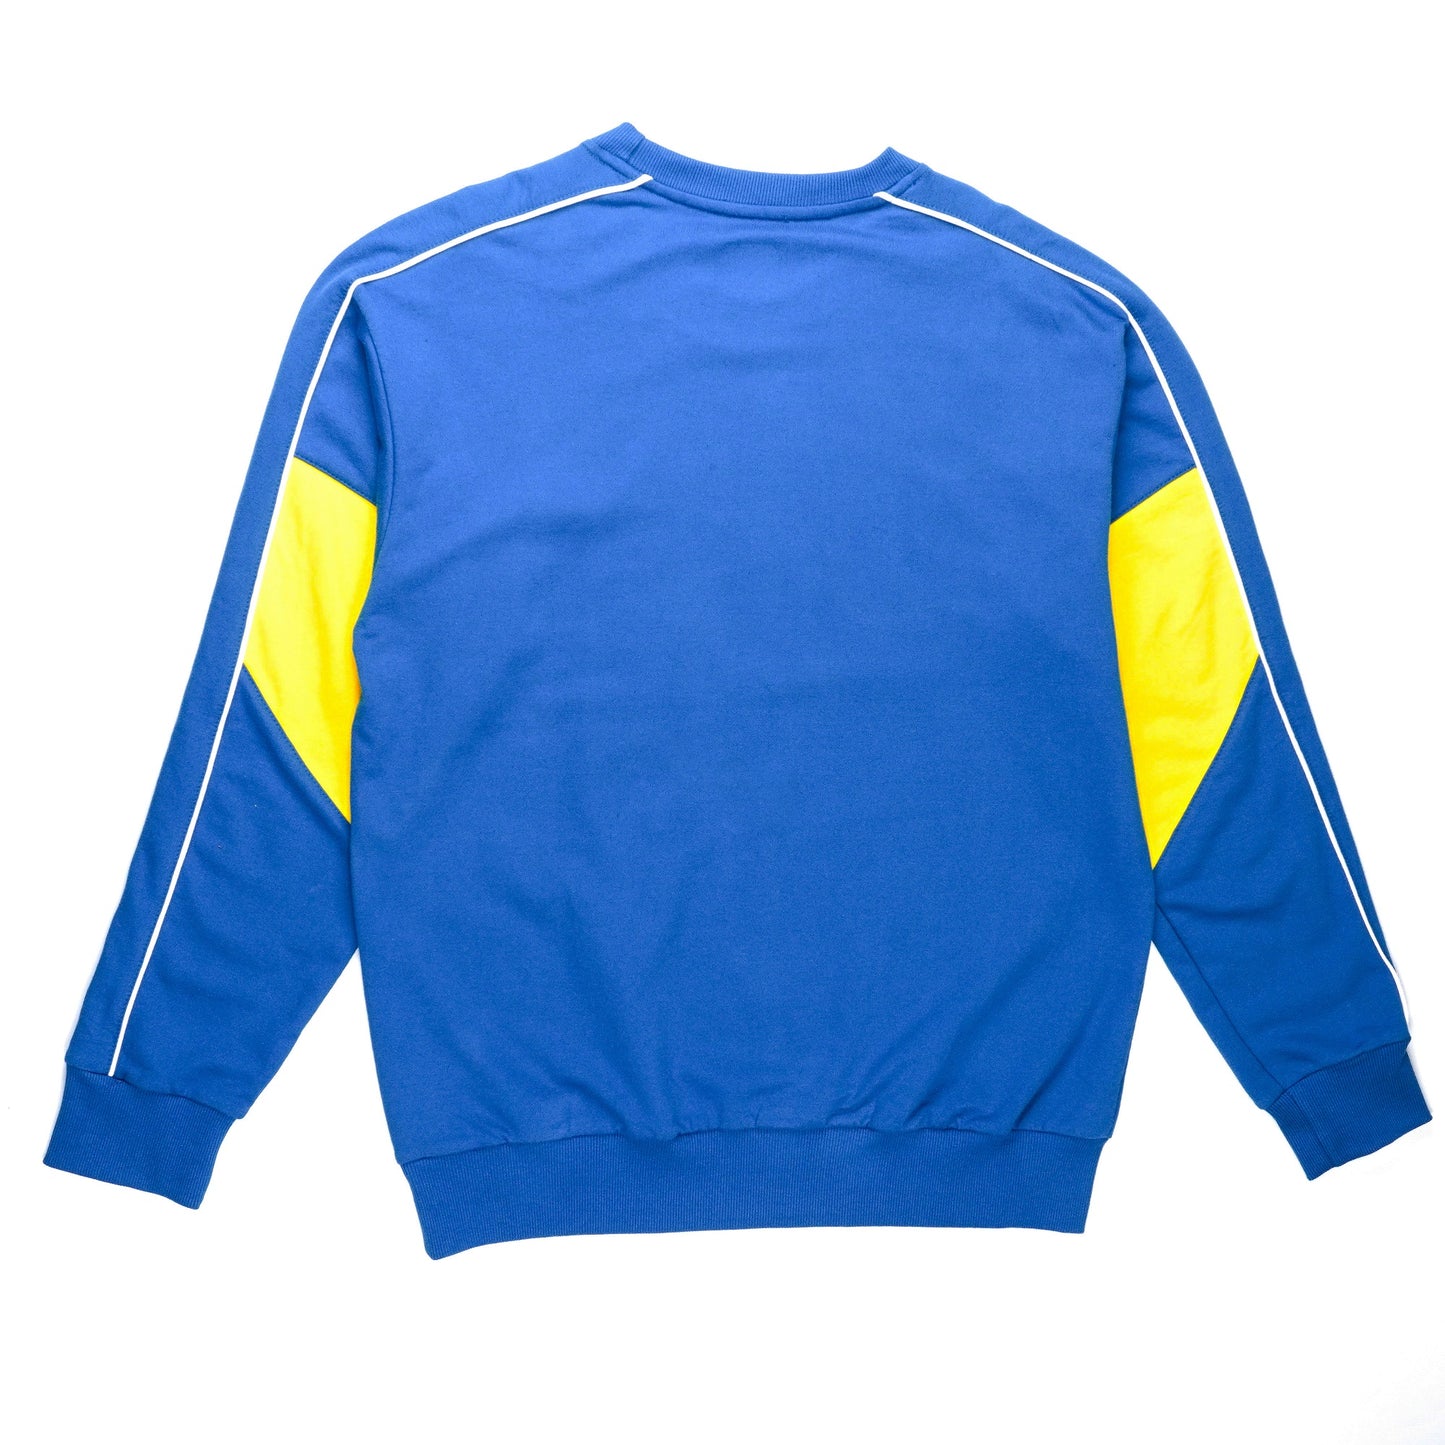 AZA Sweater Simple Colorblock - Deep Blue